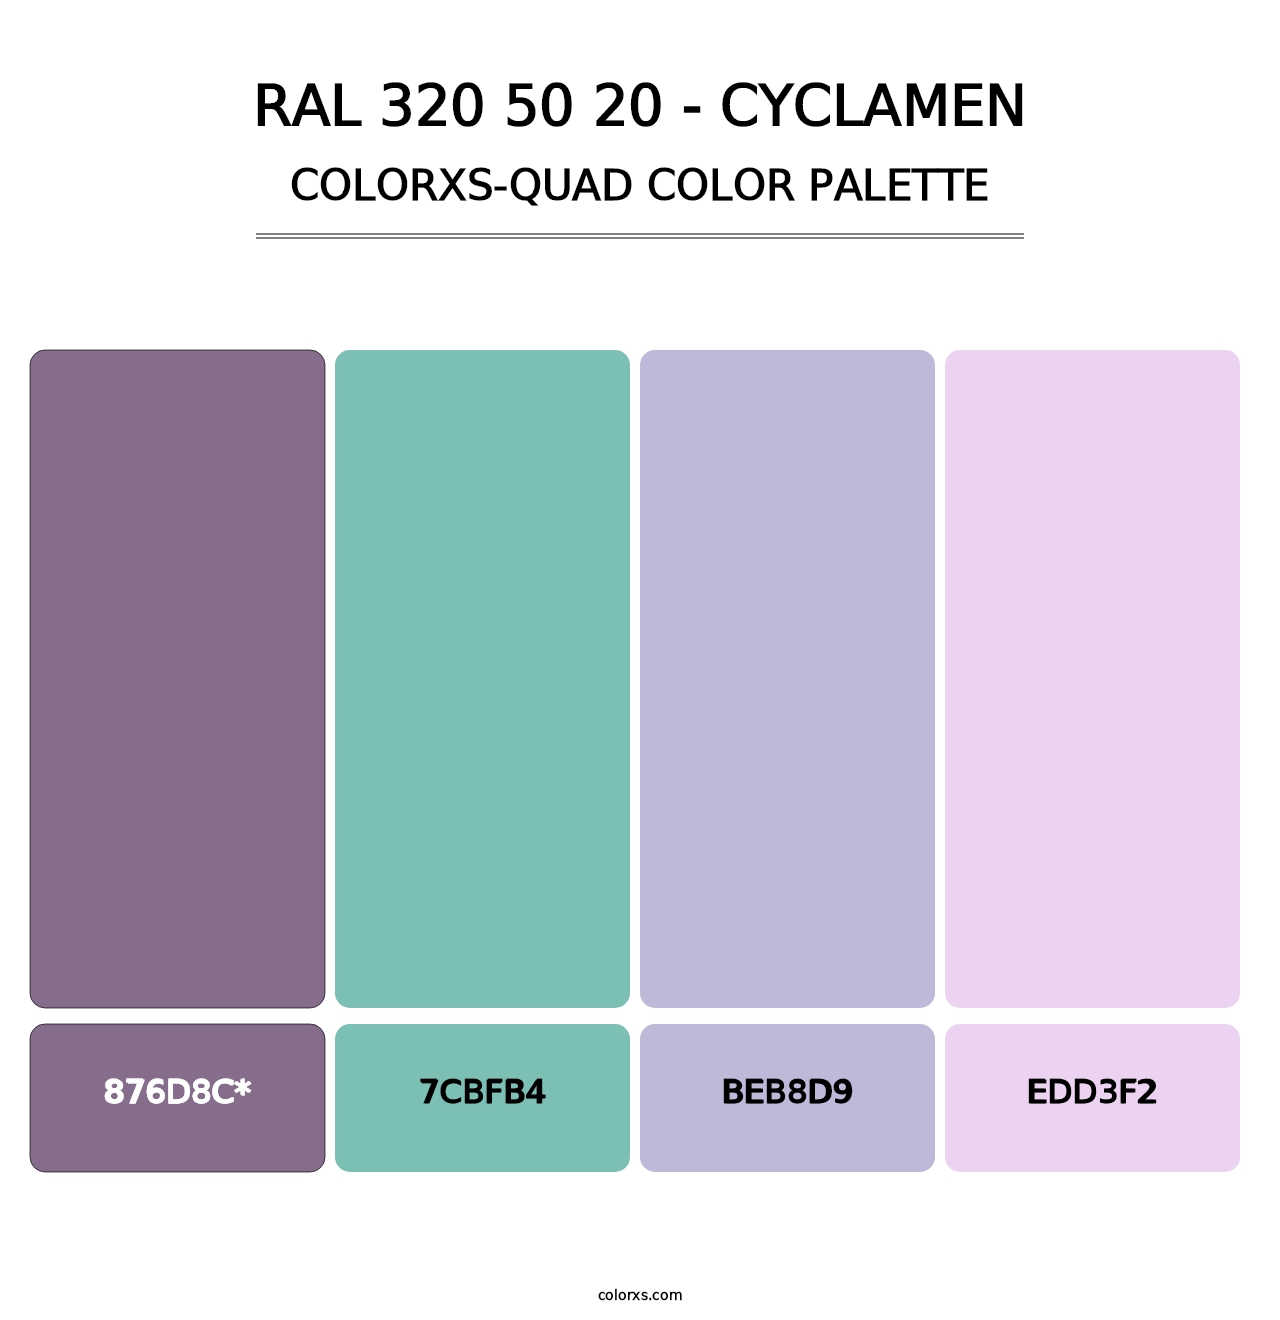 RAL 320 50 20 - Cyclamen - Colorxs Quad Palette